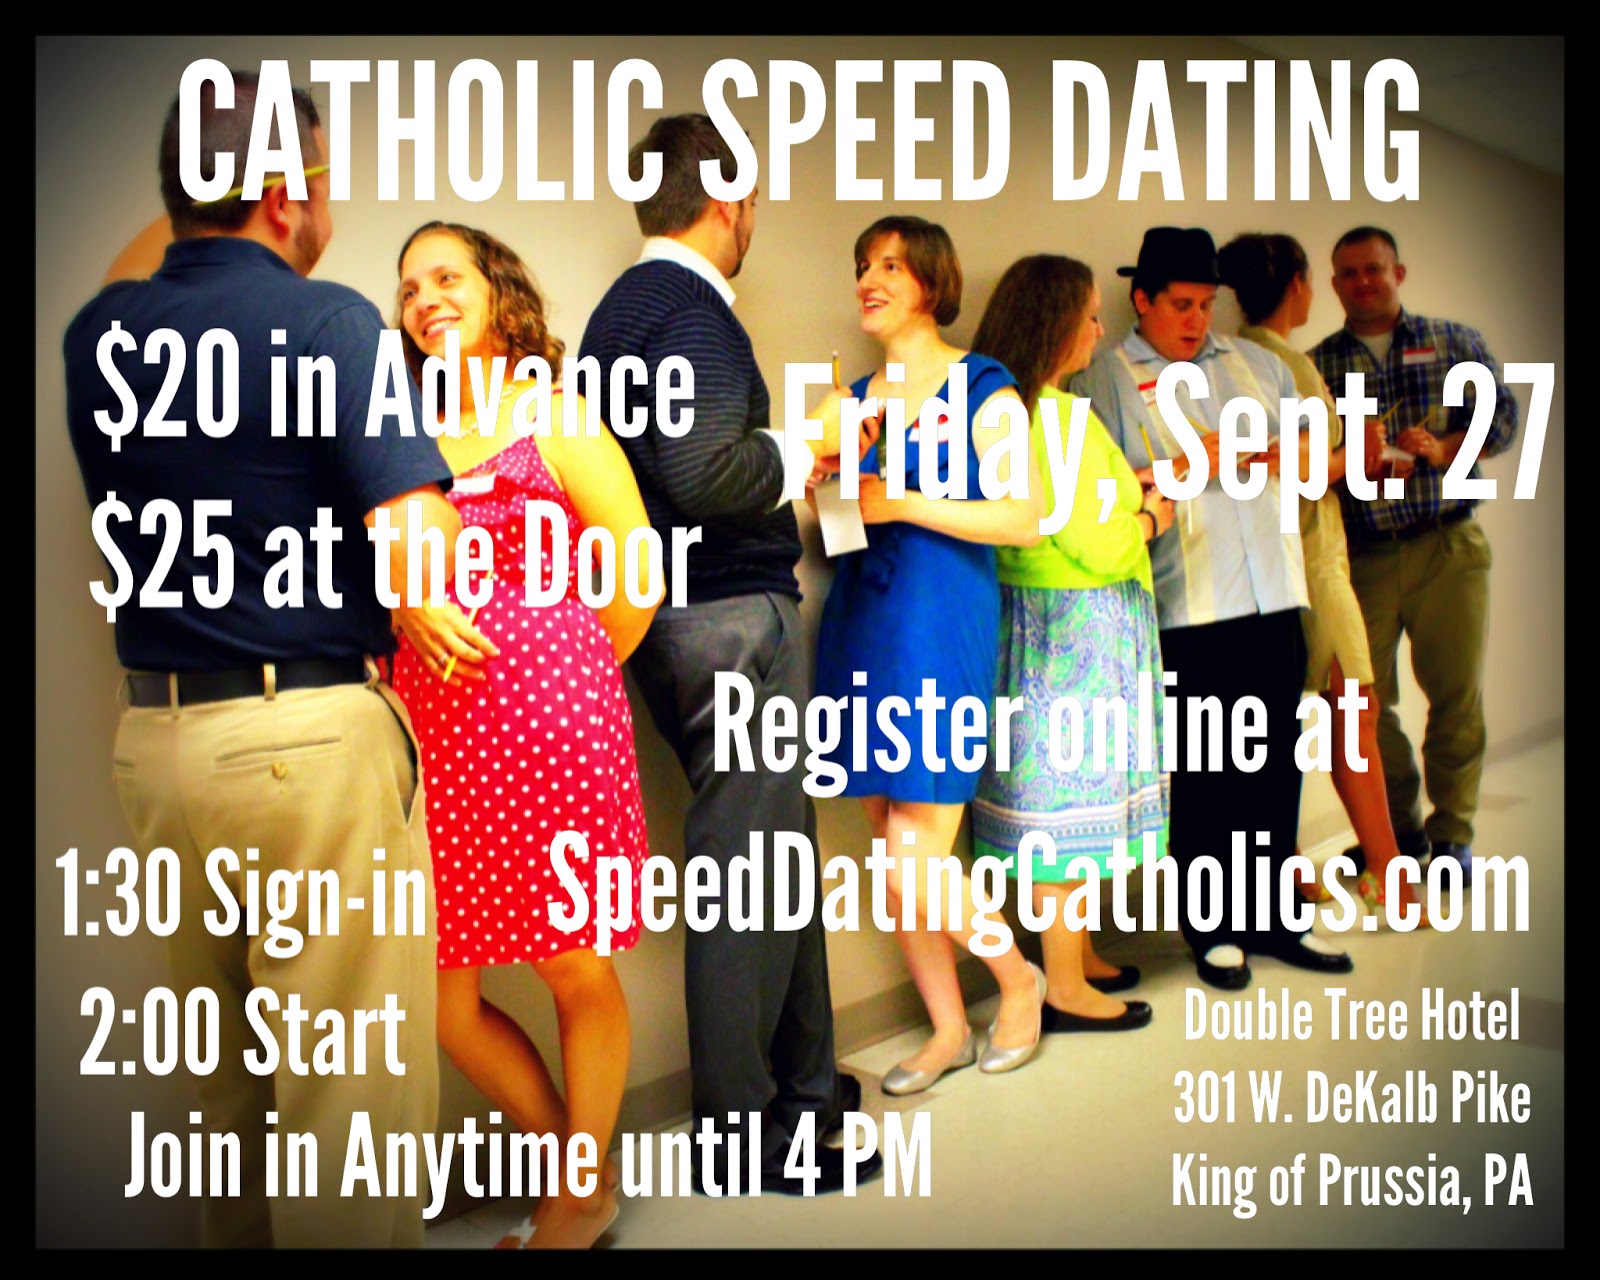 Catholic Speed Dating: Share